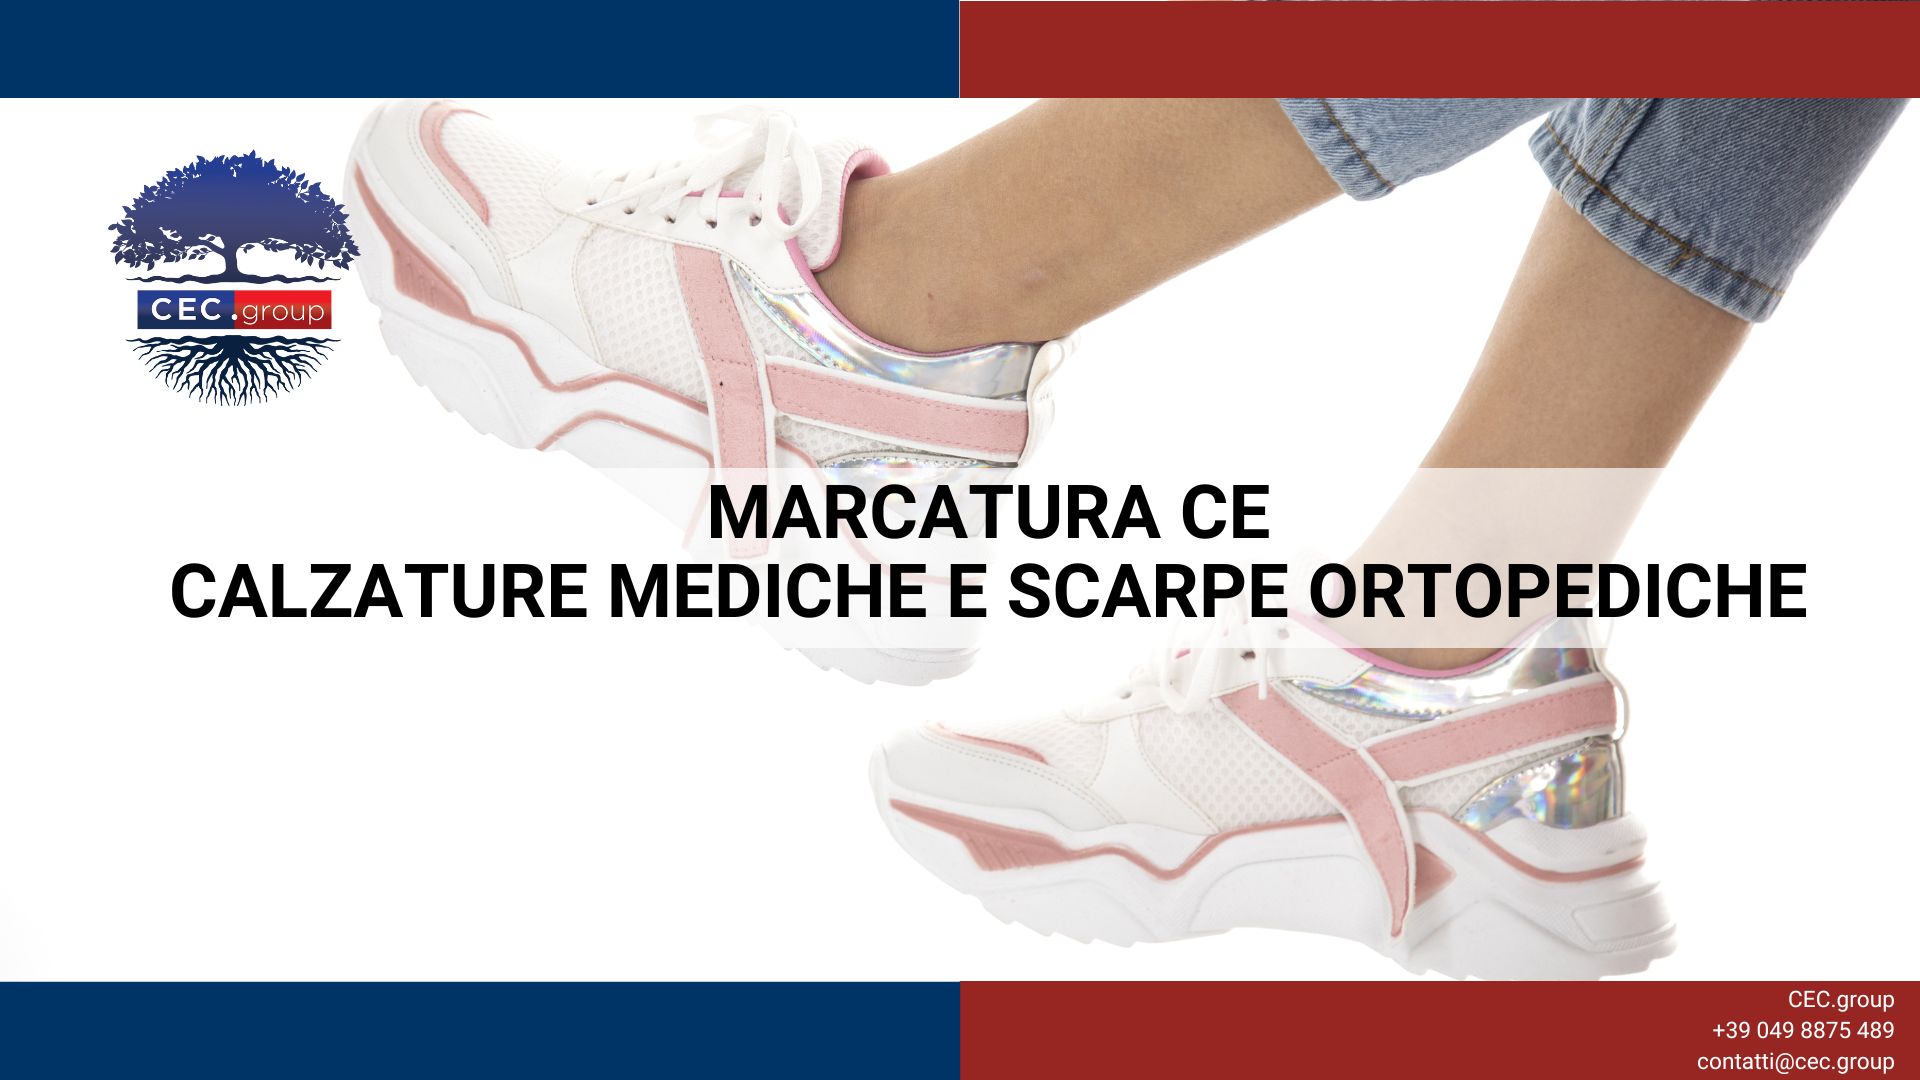 Foto 1 - Marcatura CE calzature mediche e scarpe ortopediche